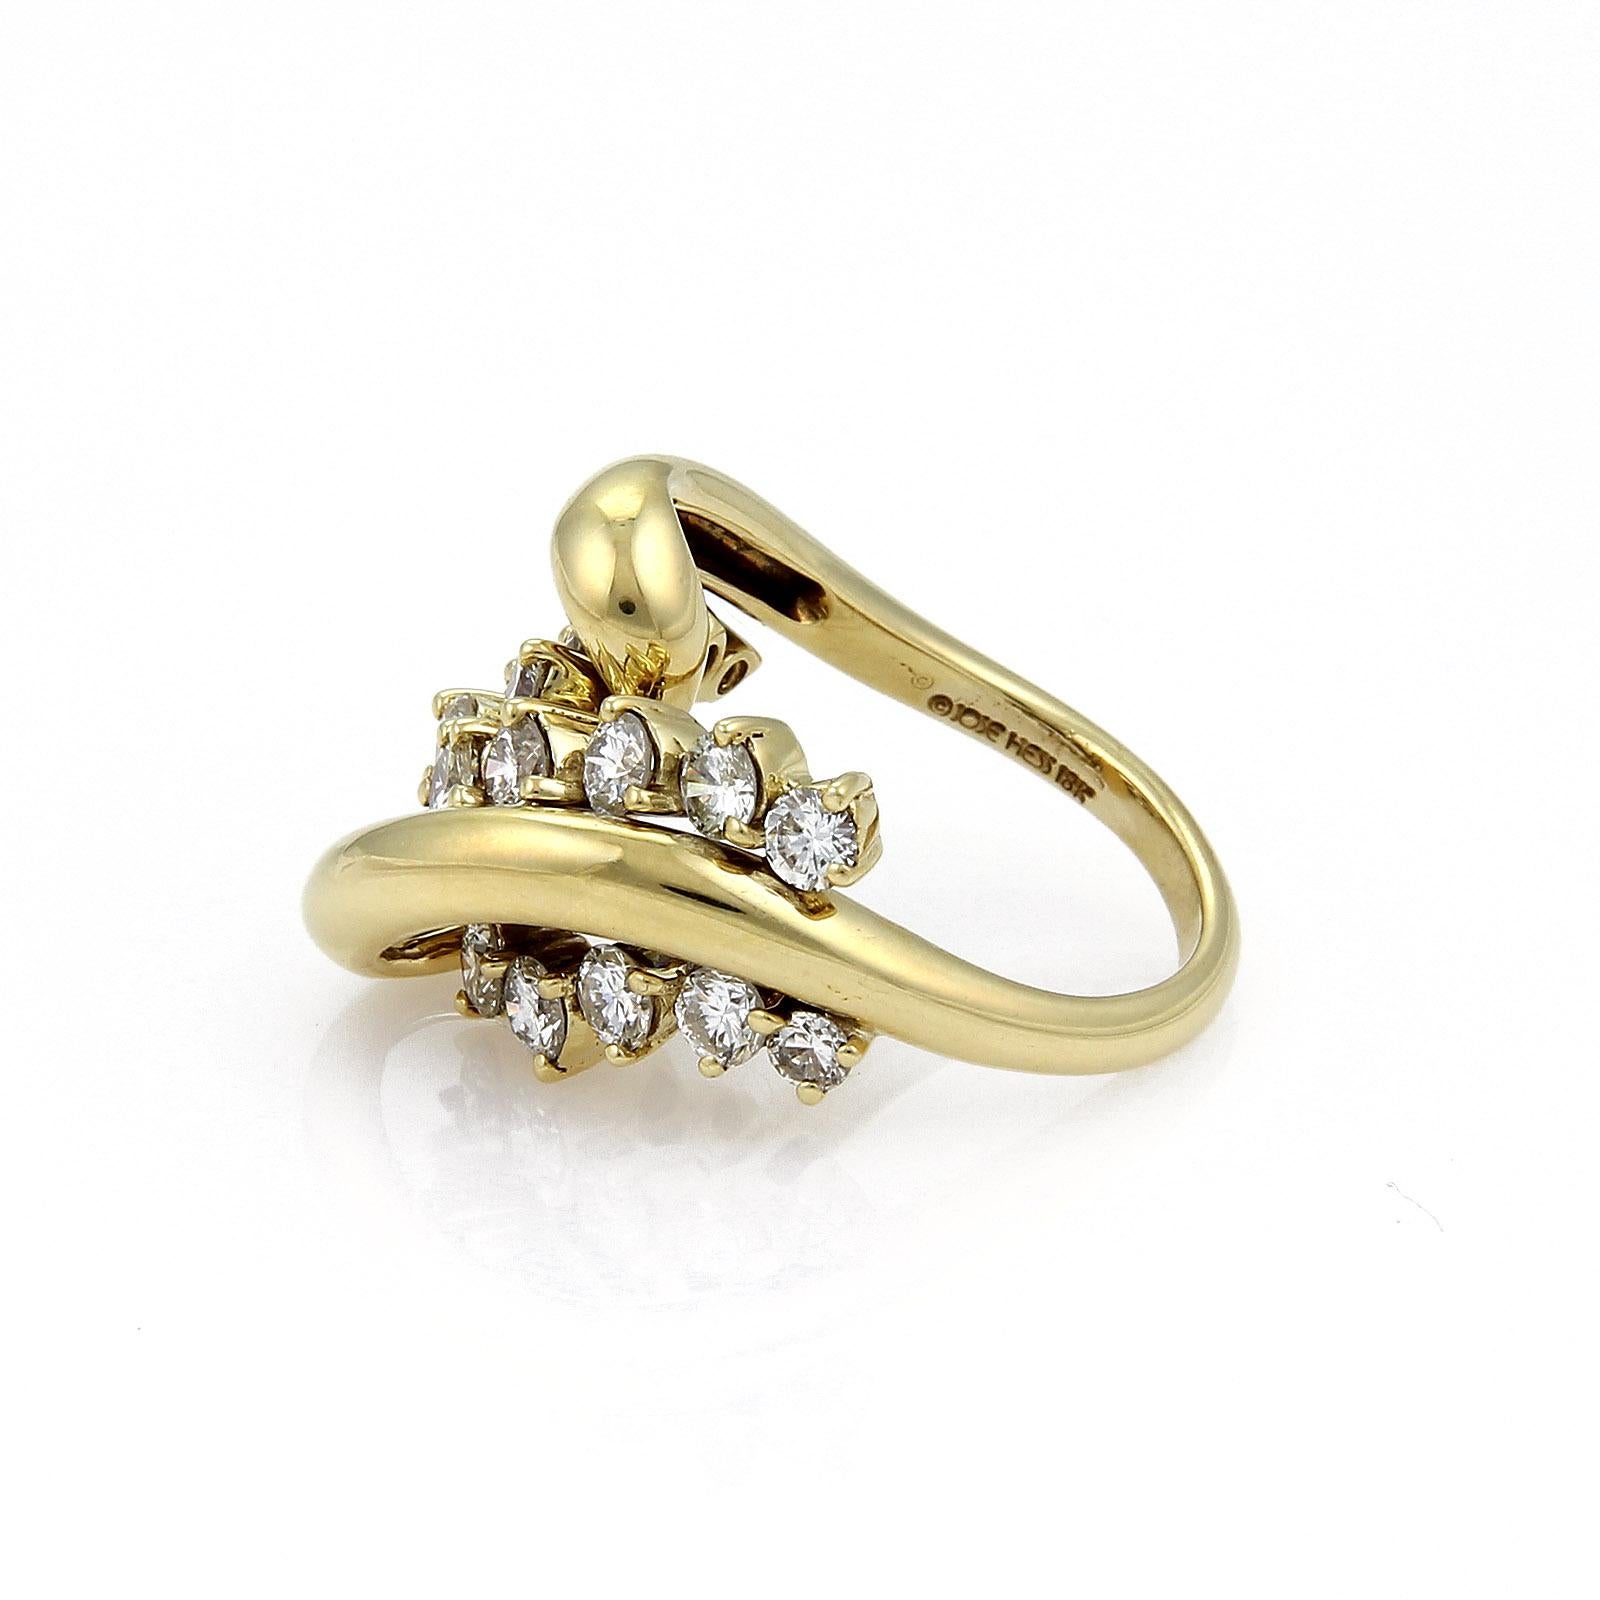 Dieser wunderschöne, authentische Ring von Jose HESS ist aus massivem 18-karätigem Gelbgold gefertigt und hochglanzpoliert. Er verfügt über eine hohe, geschwungene, offene Schleife mit runden, zackenbesetzten Diamanten, die zwischen den Schleifen